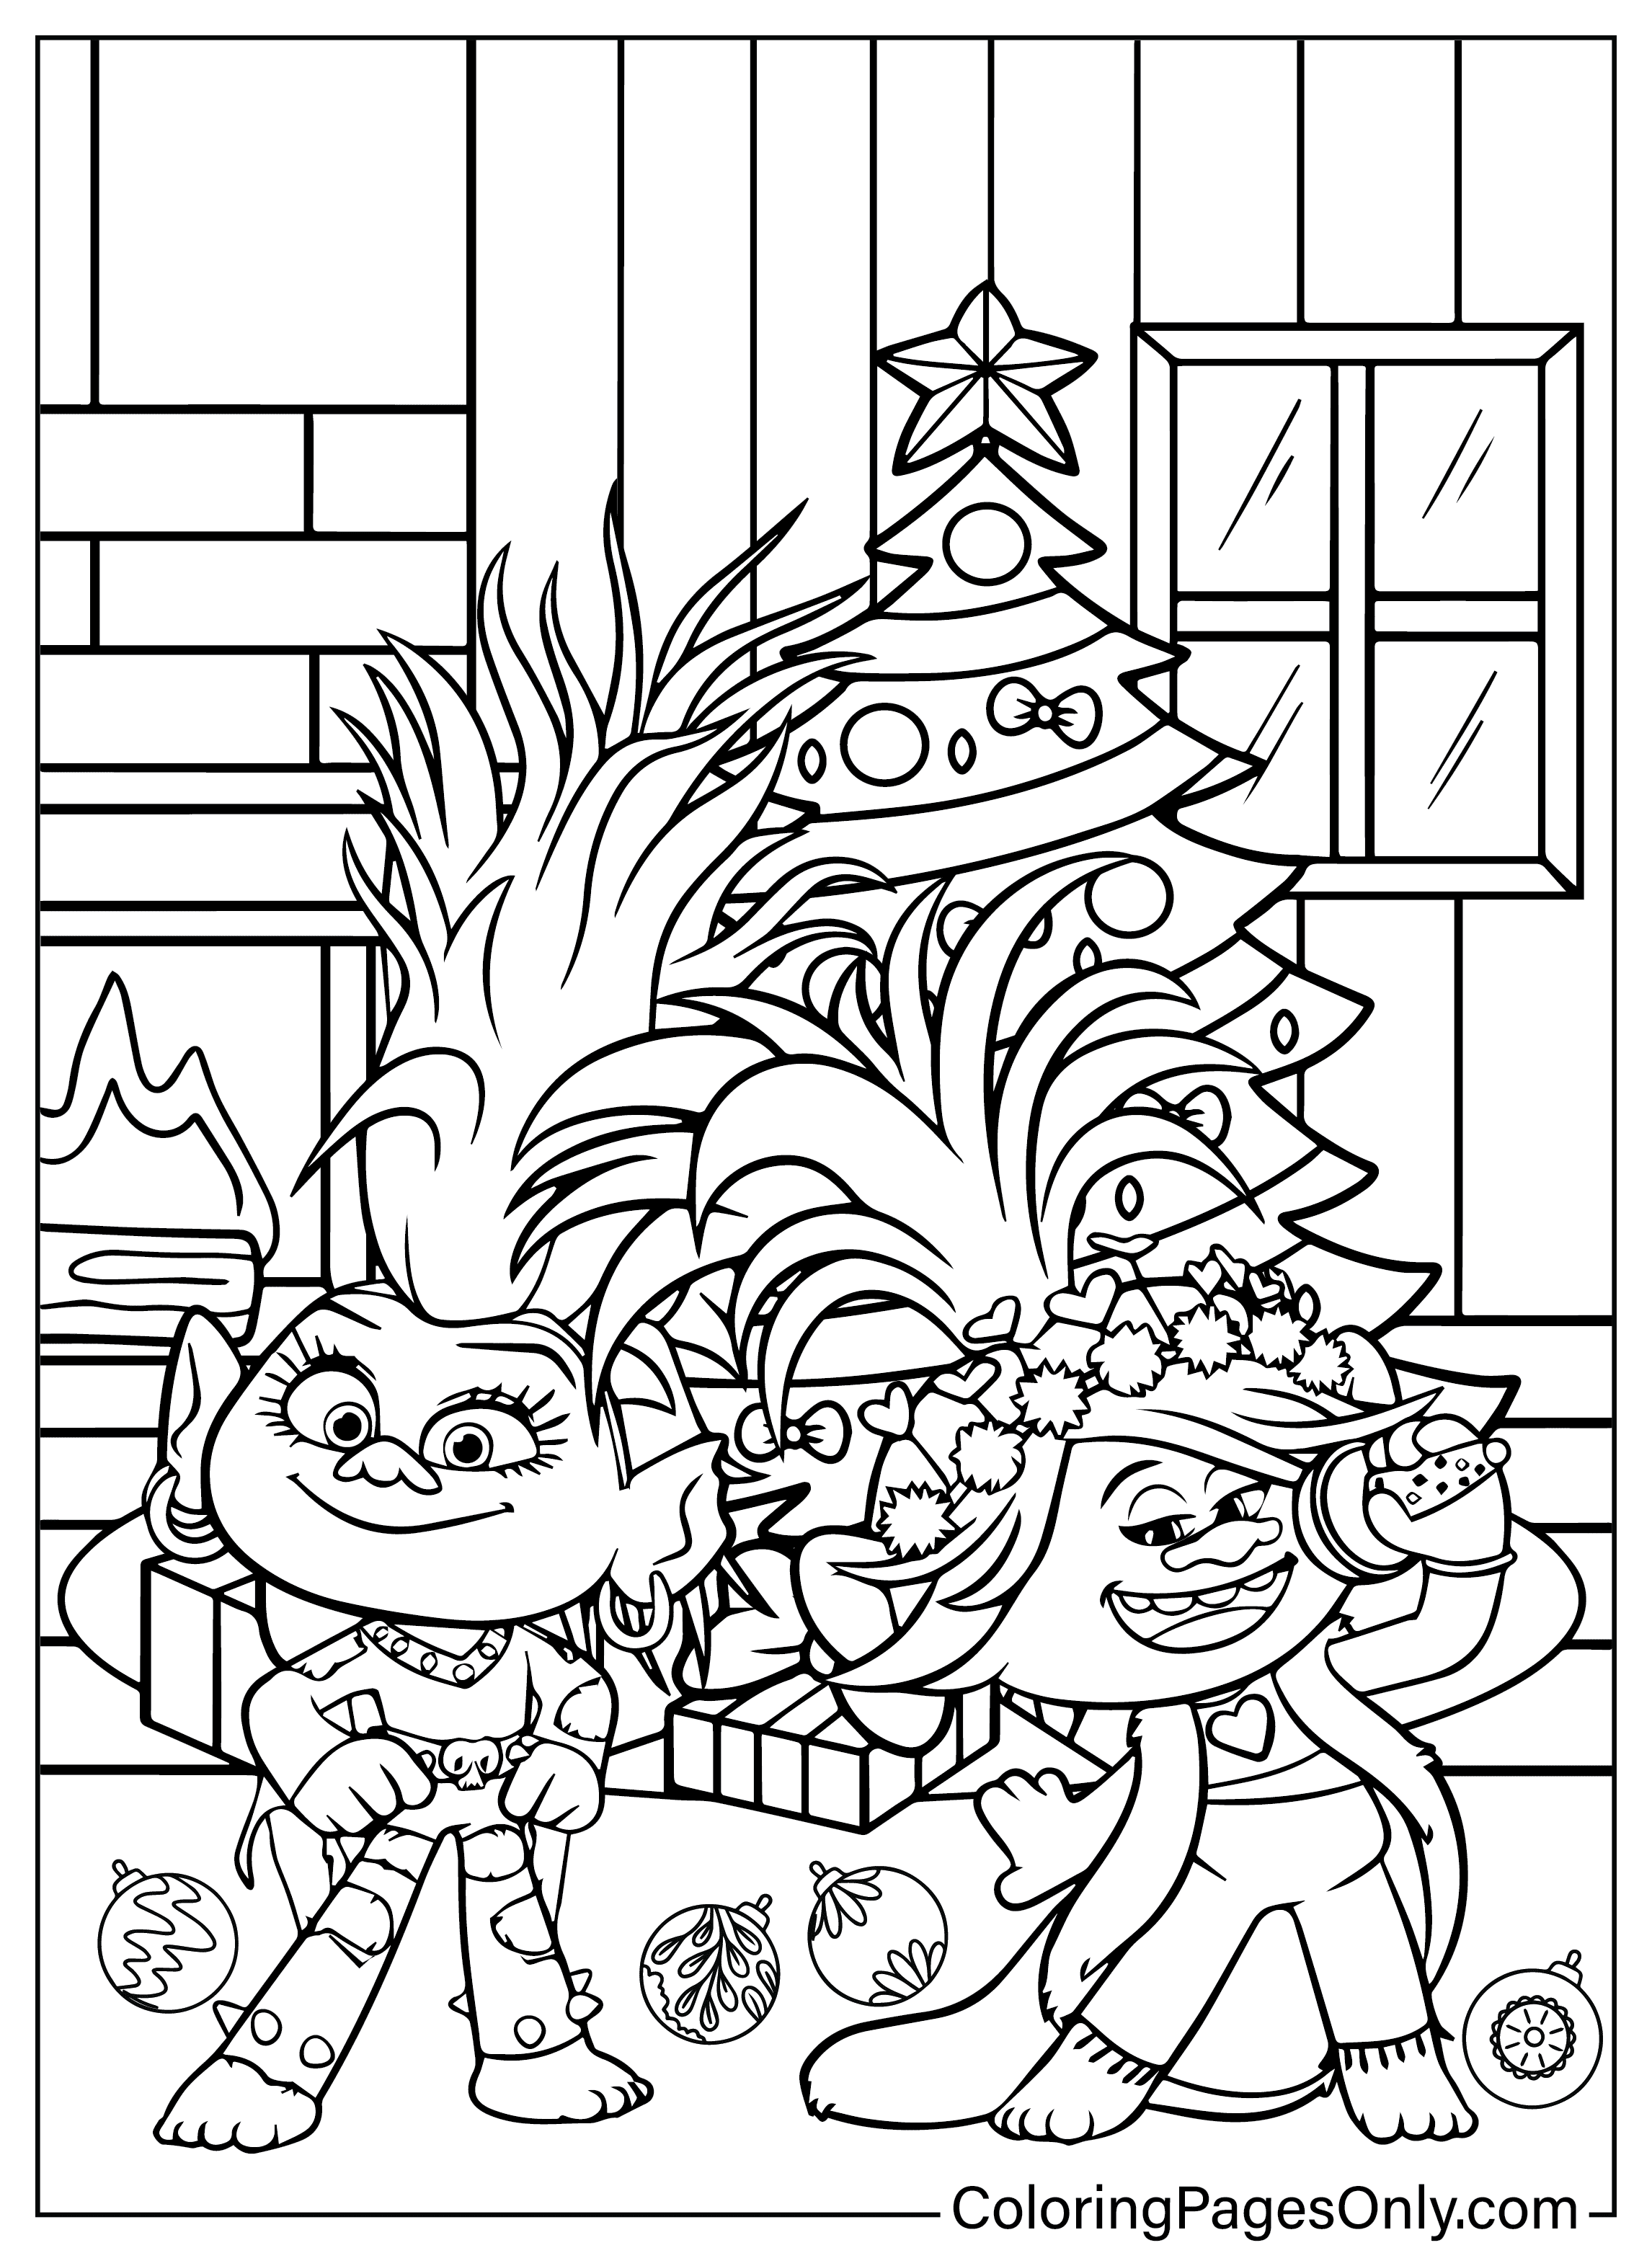 Página para colorir de Trolls de Natal do desenho animado de Natal